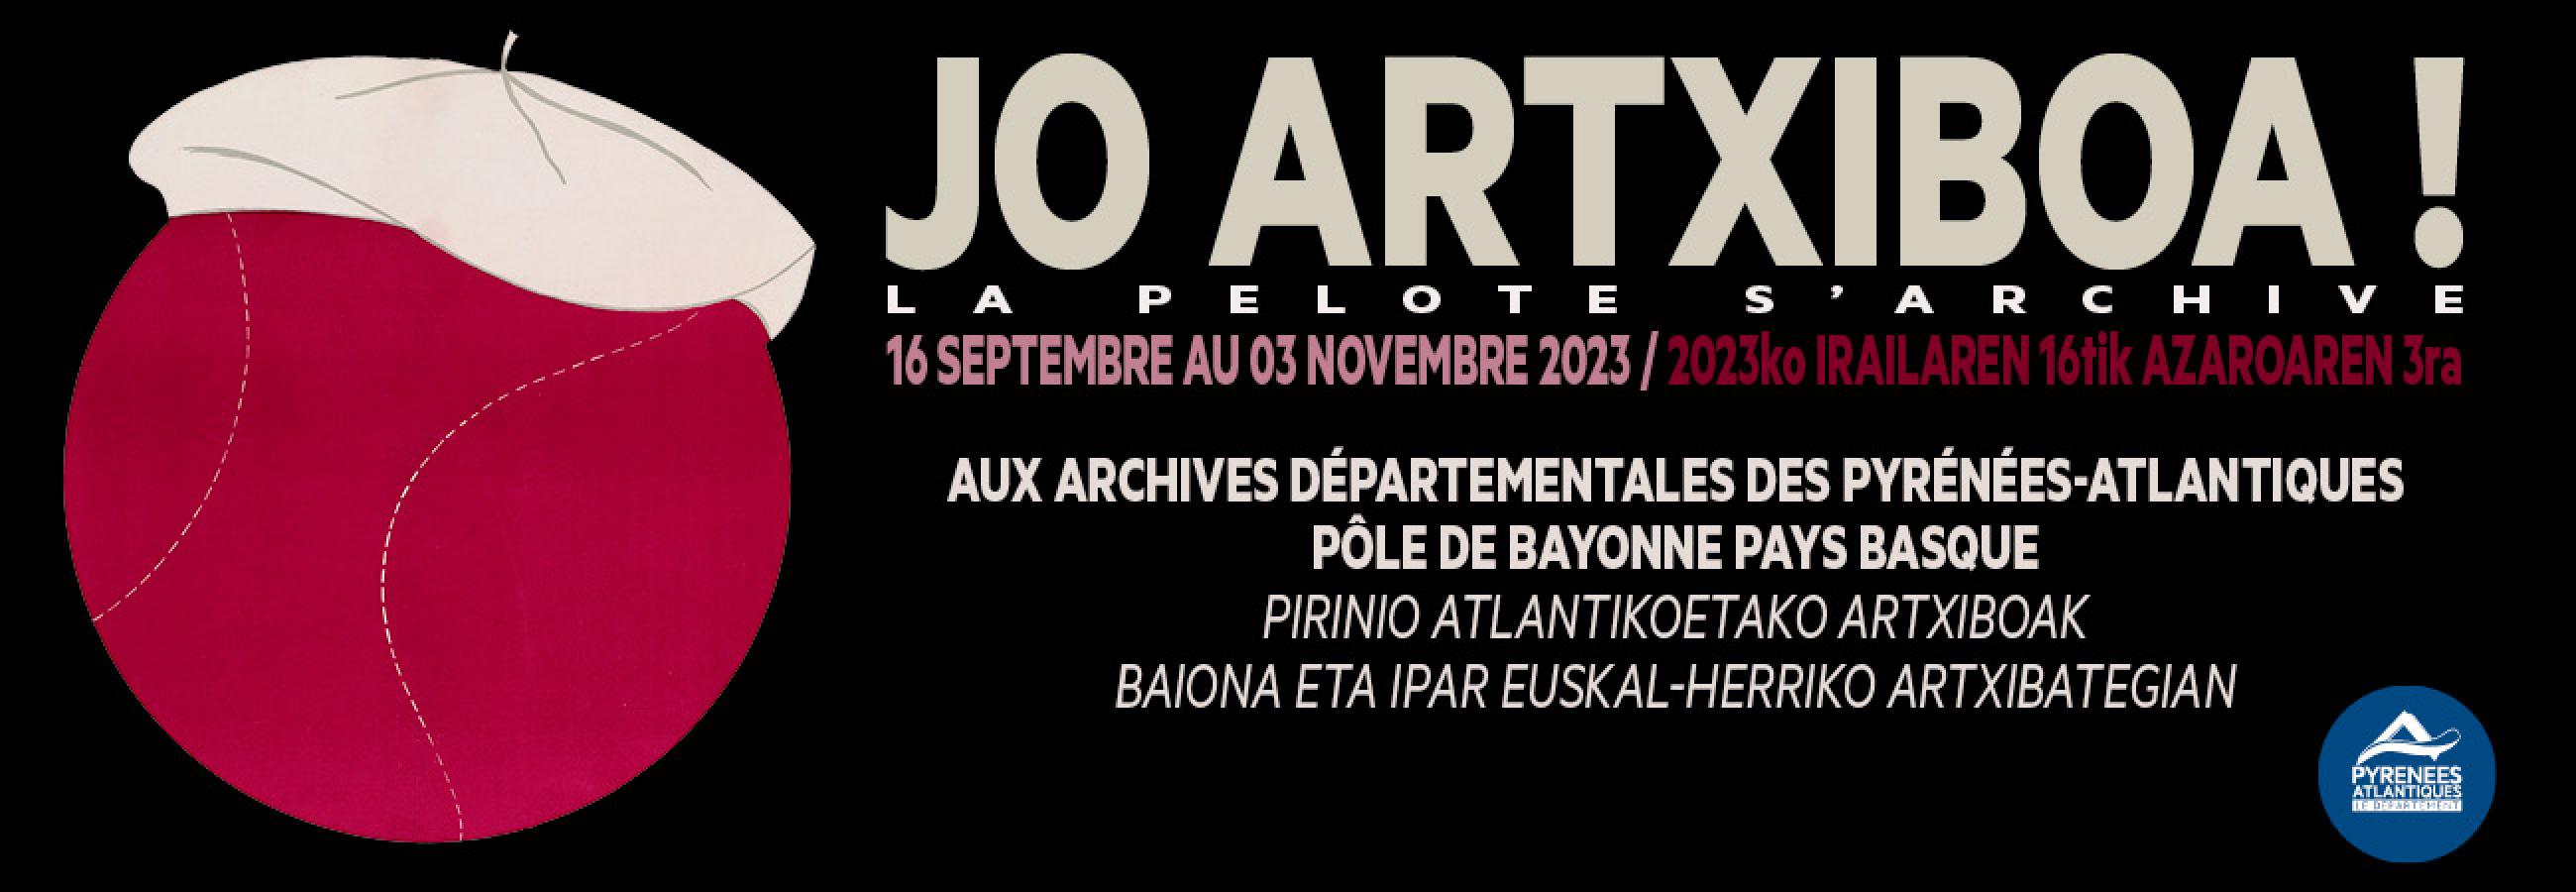 Affiche de l'exposition Jo Artxiboa!